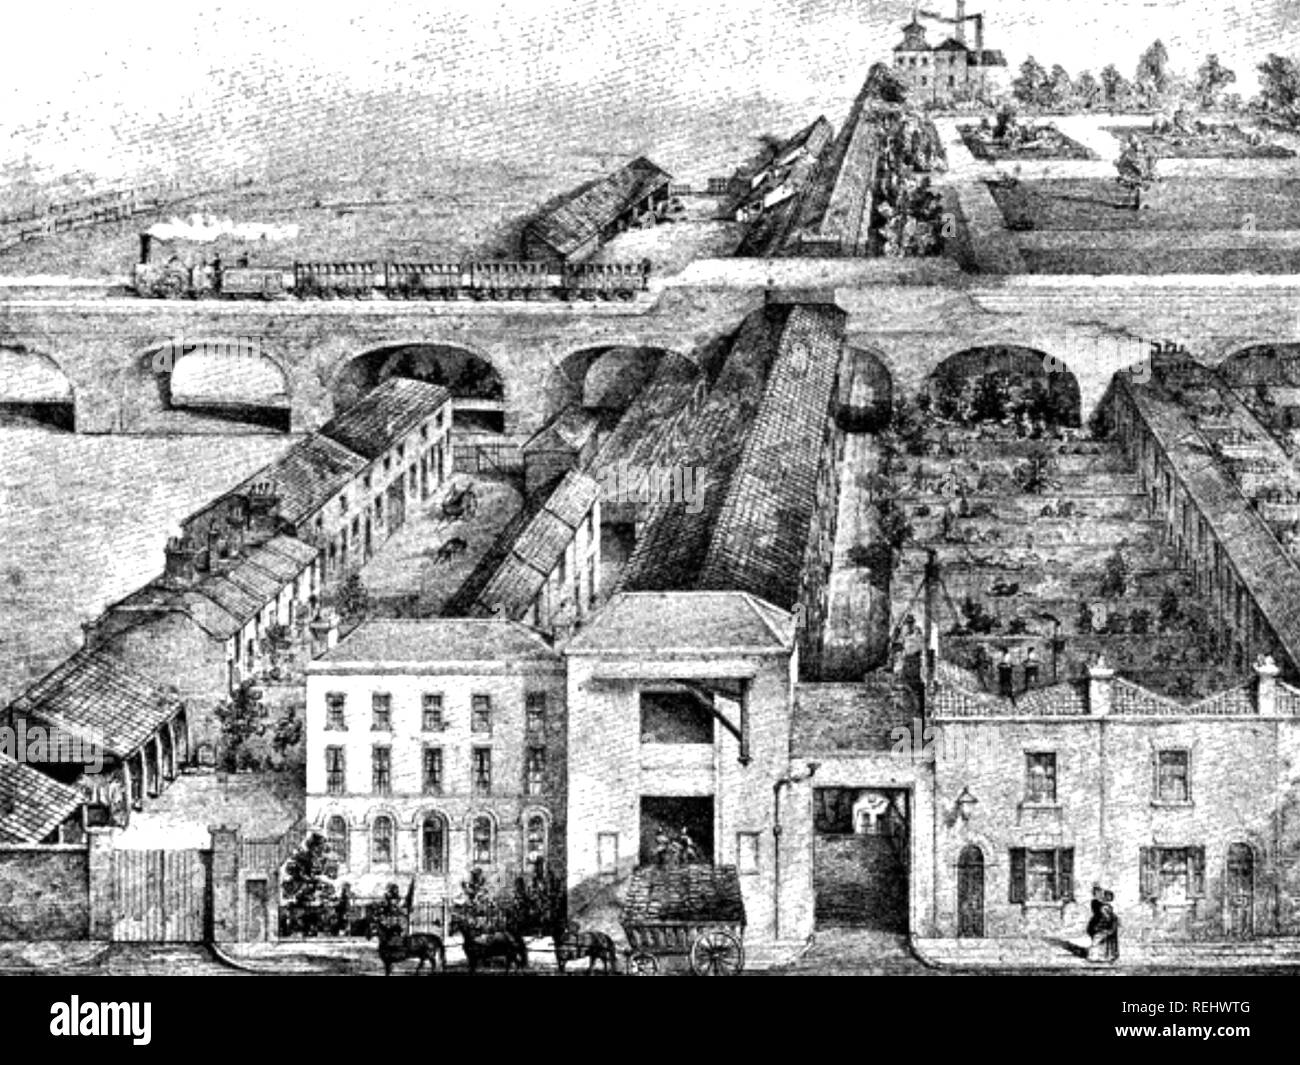 Seil, die Frost Brüder Fabrik in Commercial Road, London, um 1850 zeigt die lange Galerie, in der die Seile gedreht wurden. Stockfoto